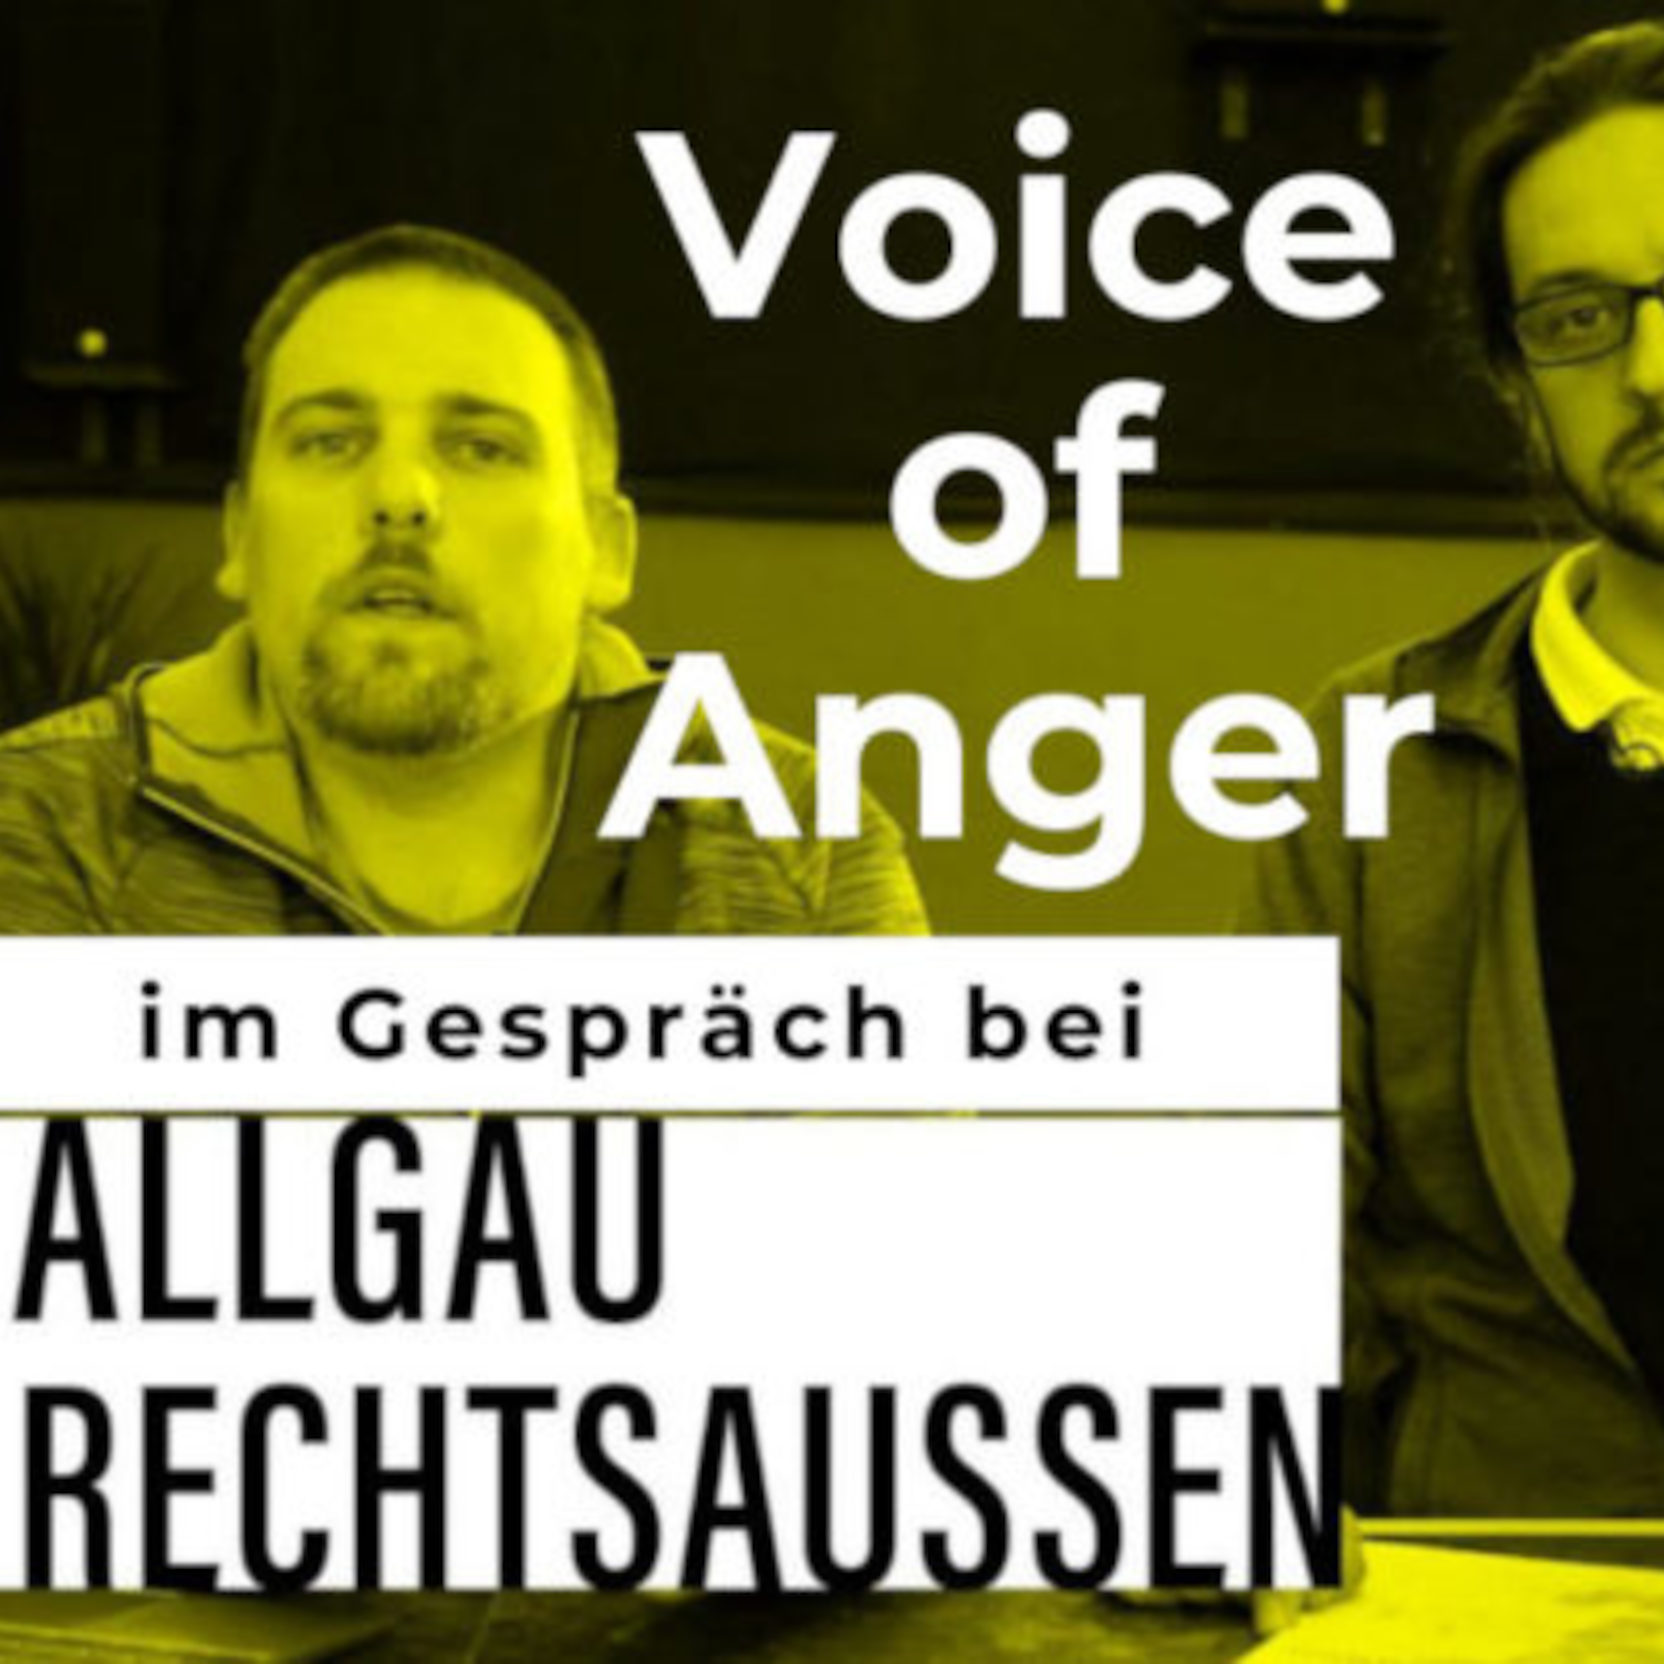 Die Historie von Voice of Anger im Gespräch bei Allgäu rechtsaußen